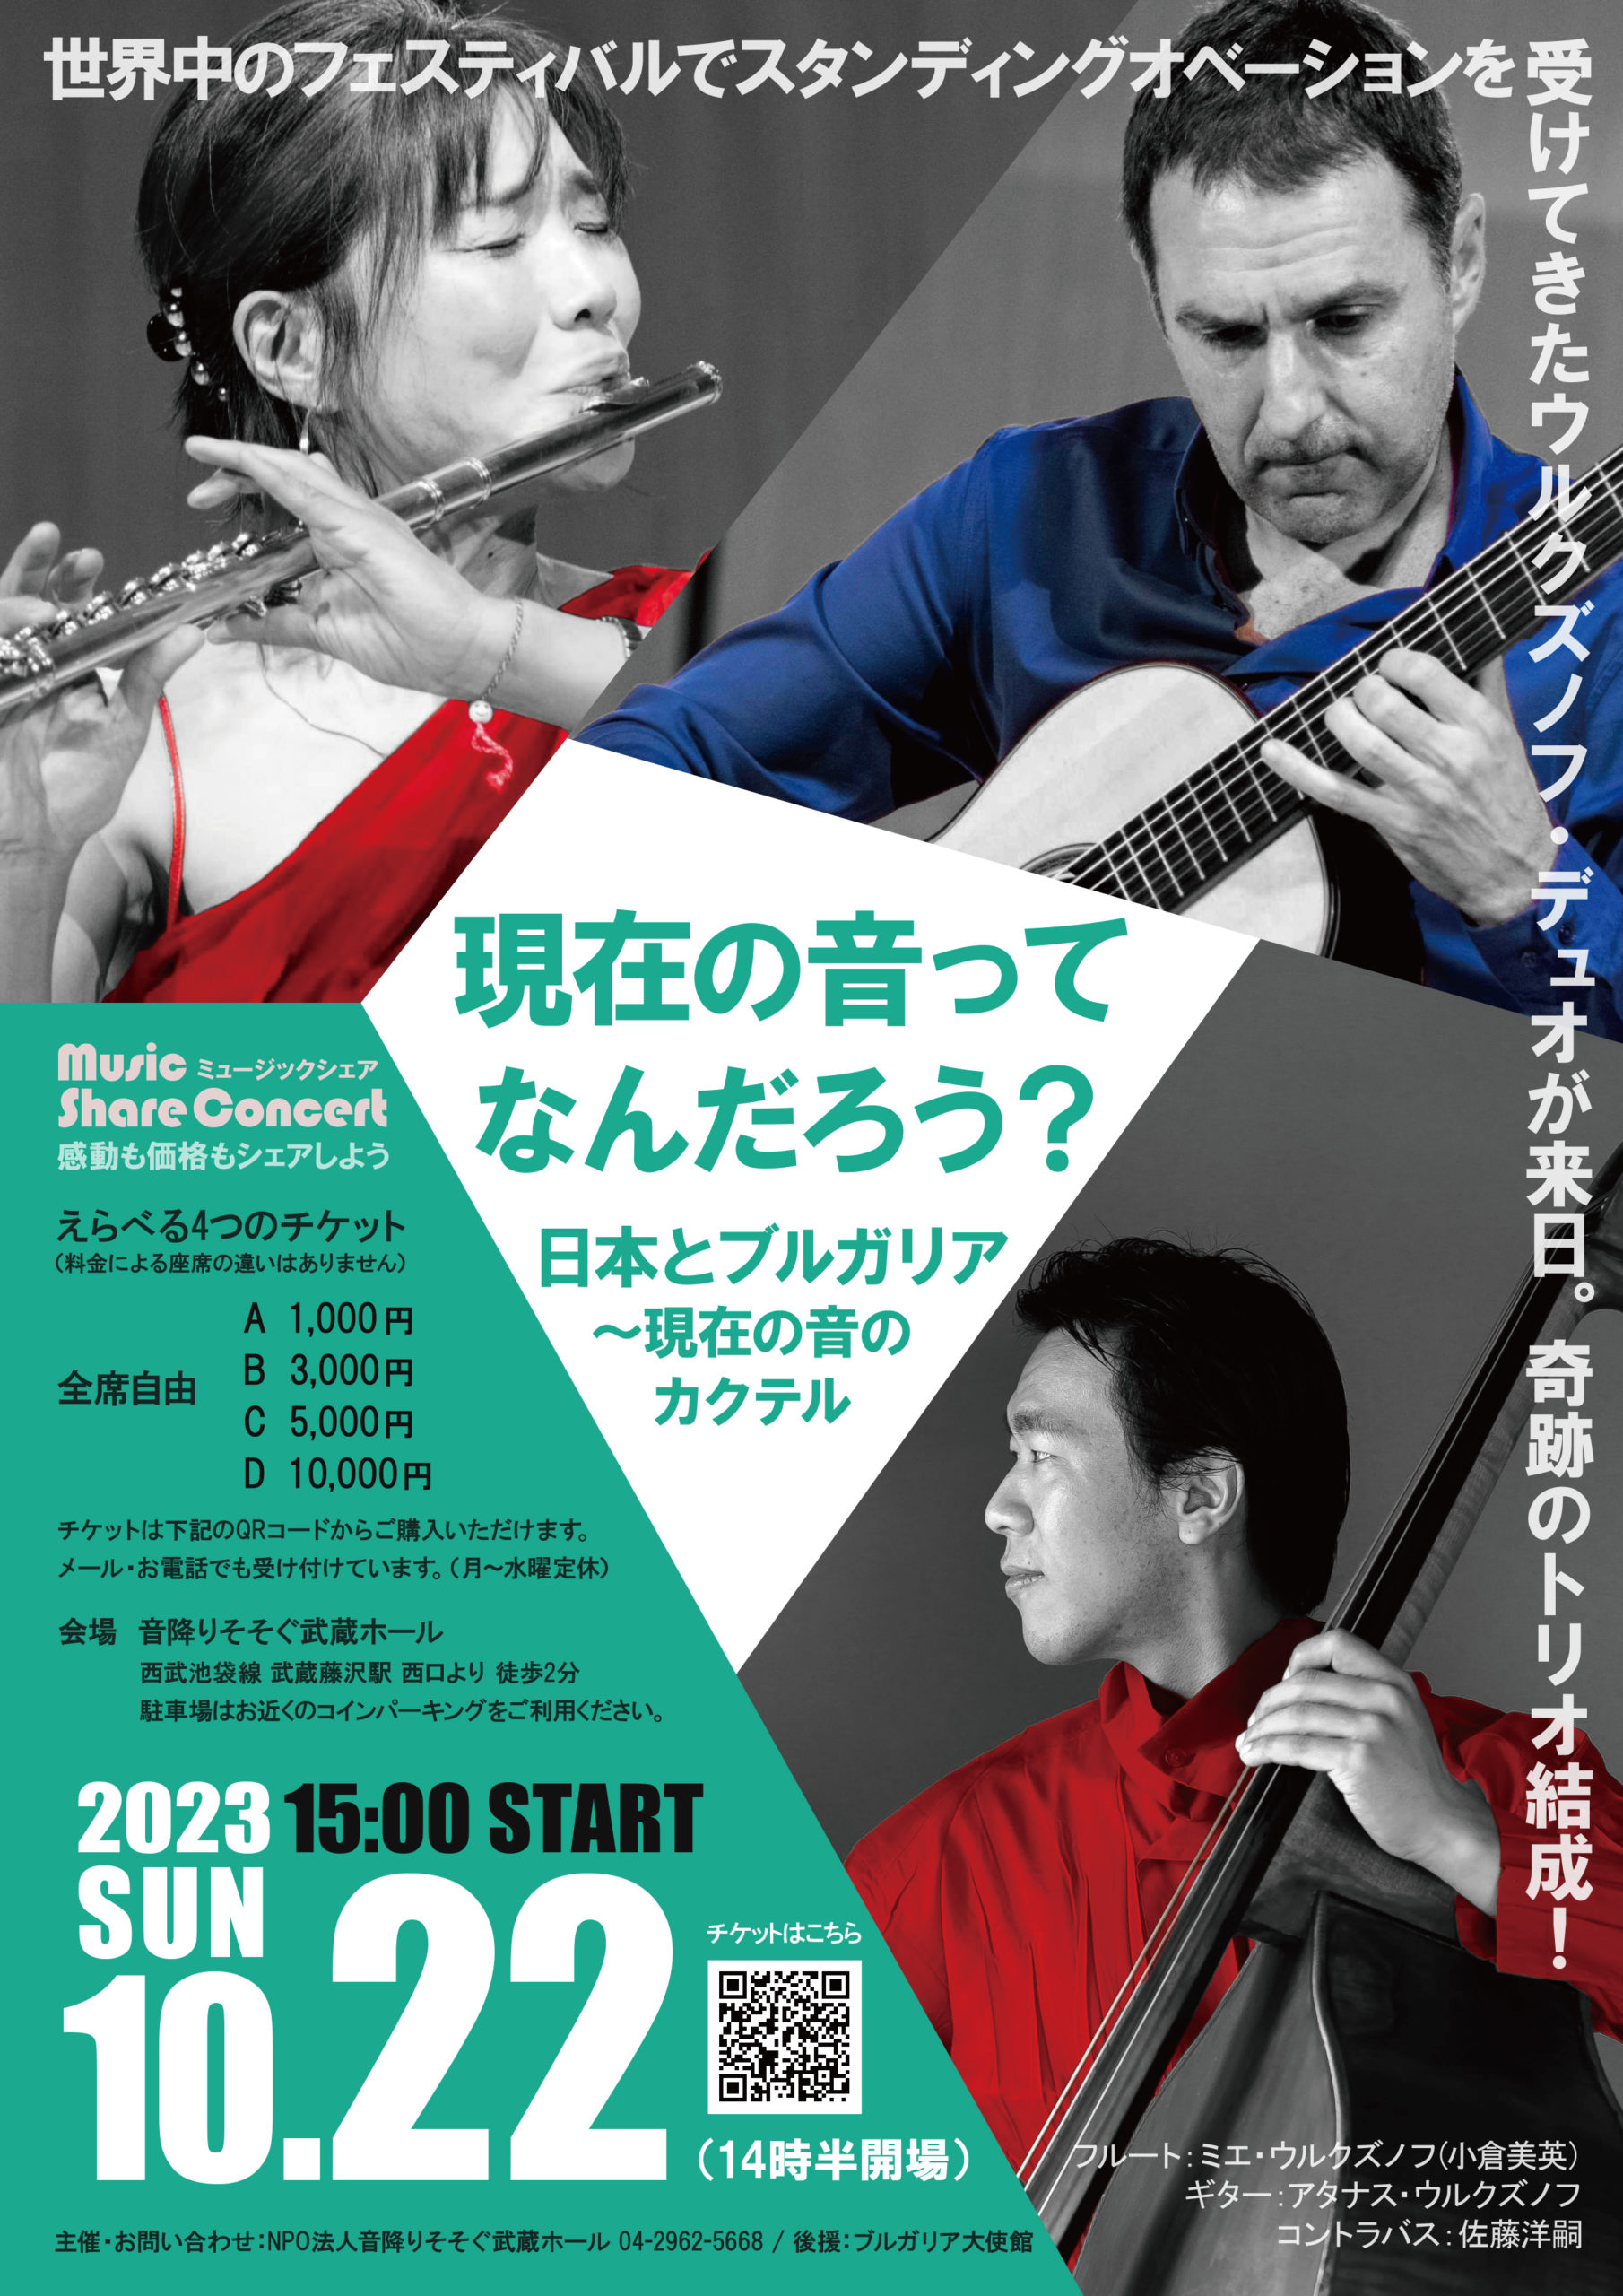 Music Share Concert「すぱいらる・うるくずのふ・プロジェクトvol.2 @JAPAN 2023 日本とブルガリア ~現在の音のカクテル」